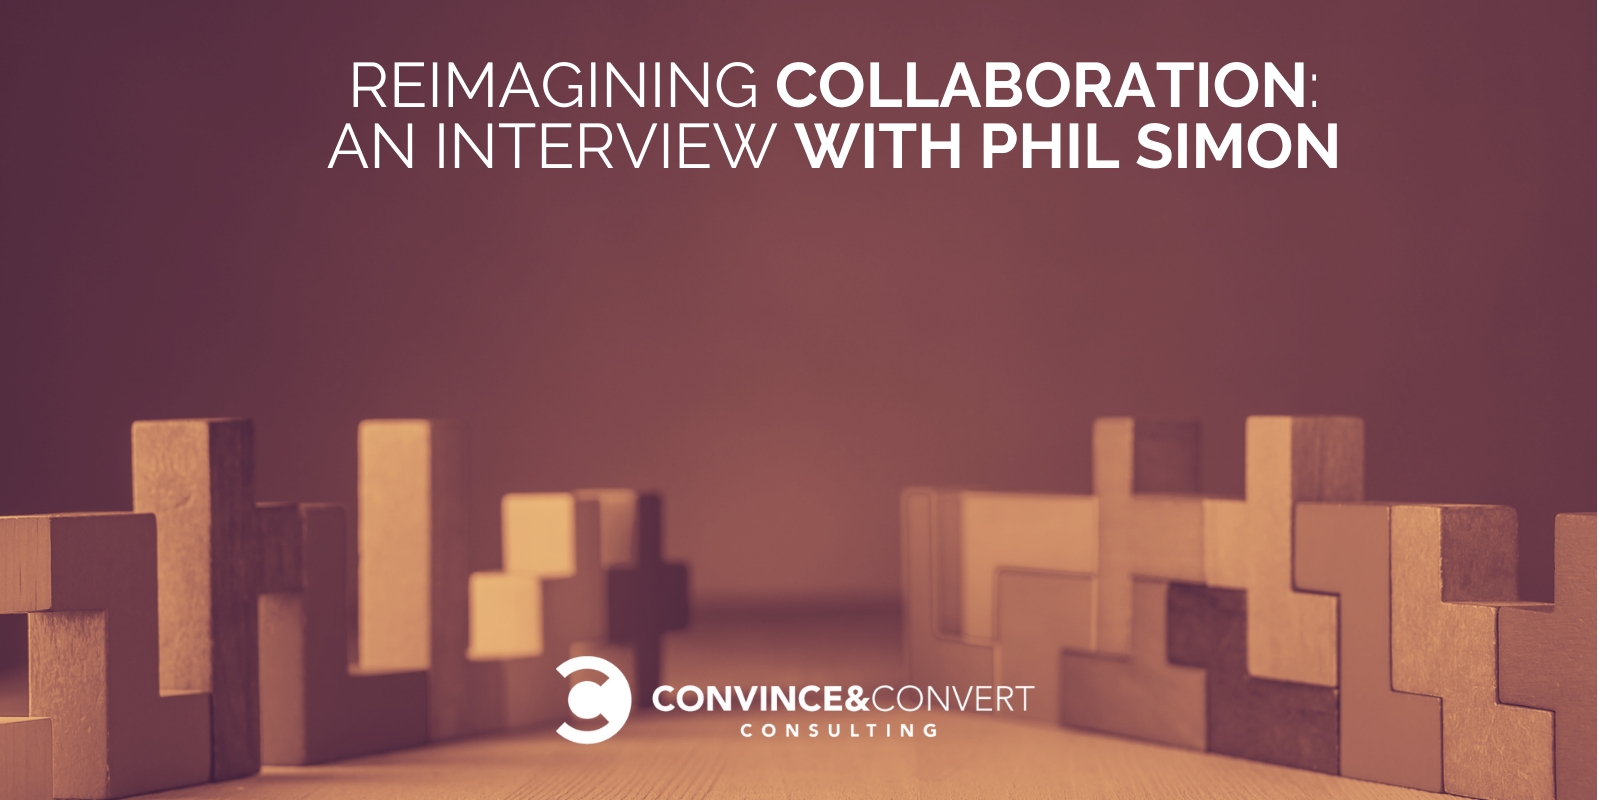 Intervista a Phil Simon